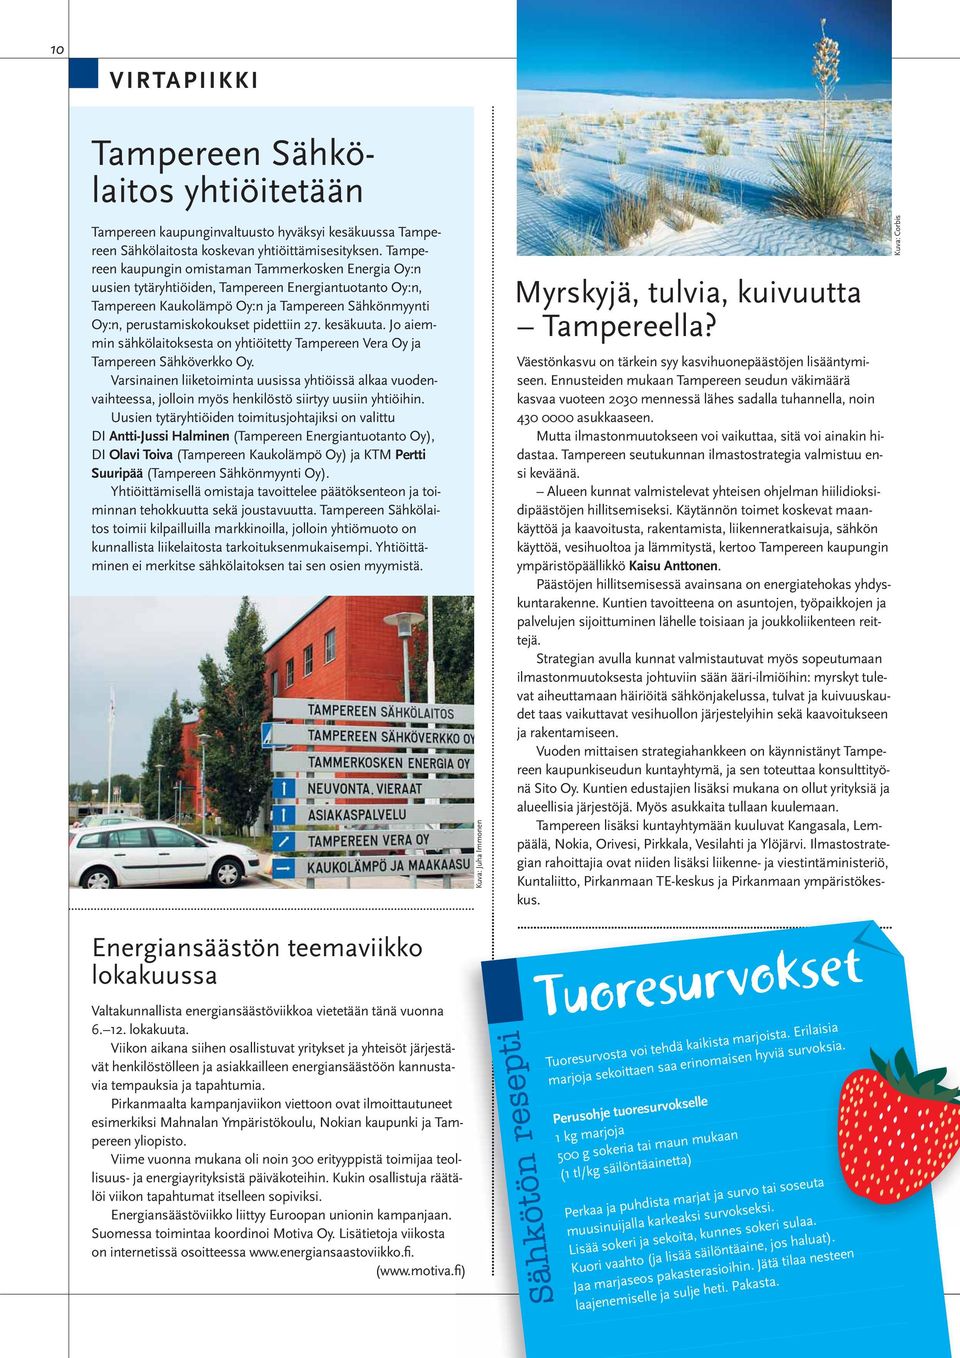 27. kesäkuuta. Jo aiemmin sähkölaitoksesta on yhtiöitetty Tampereen Vera Oy ja Tampereen Sähköverkko Oy.